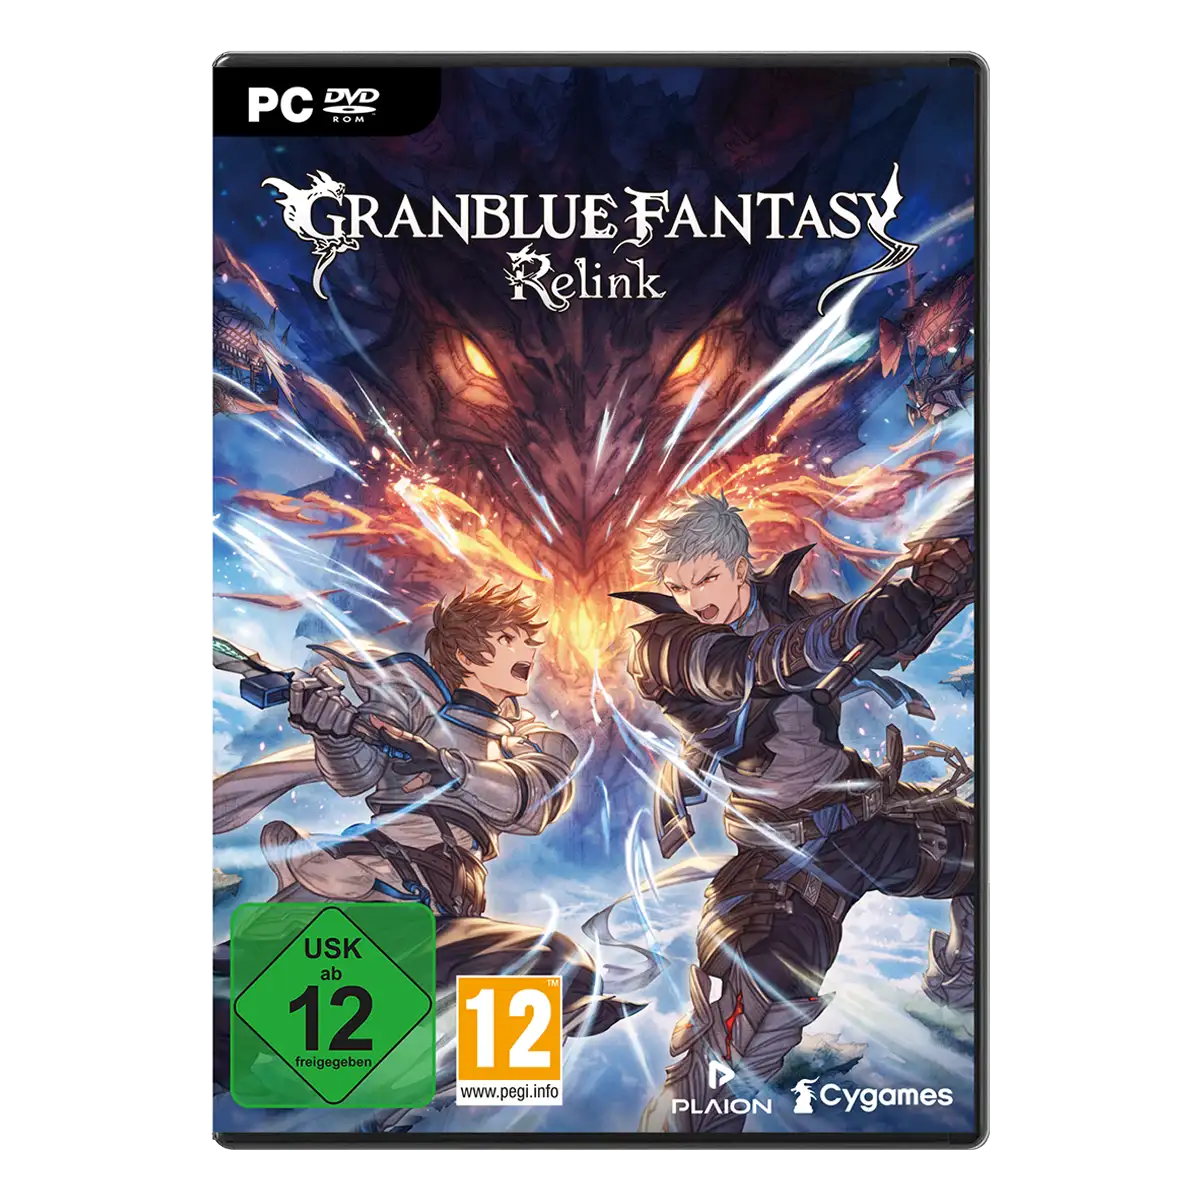 Granblue Fantasy Relink (PC) Cover